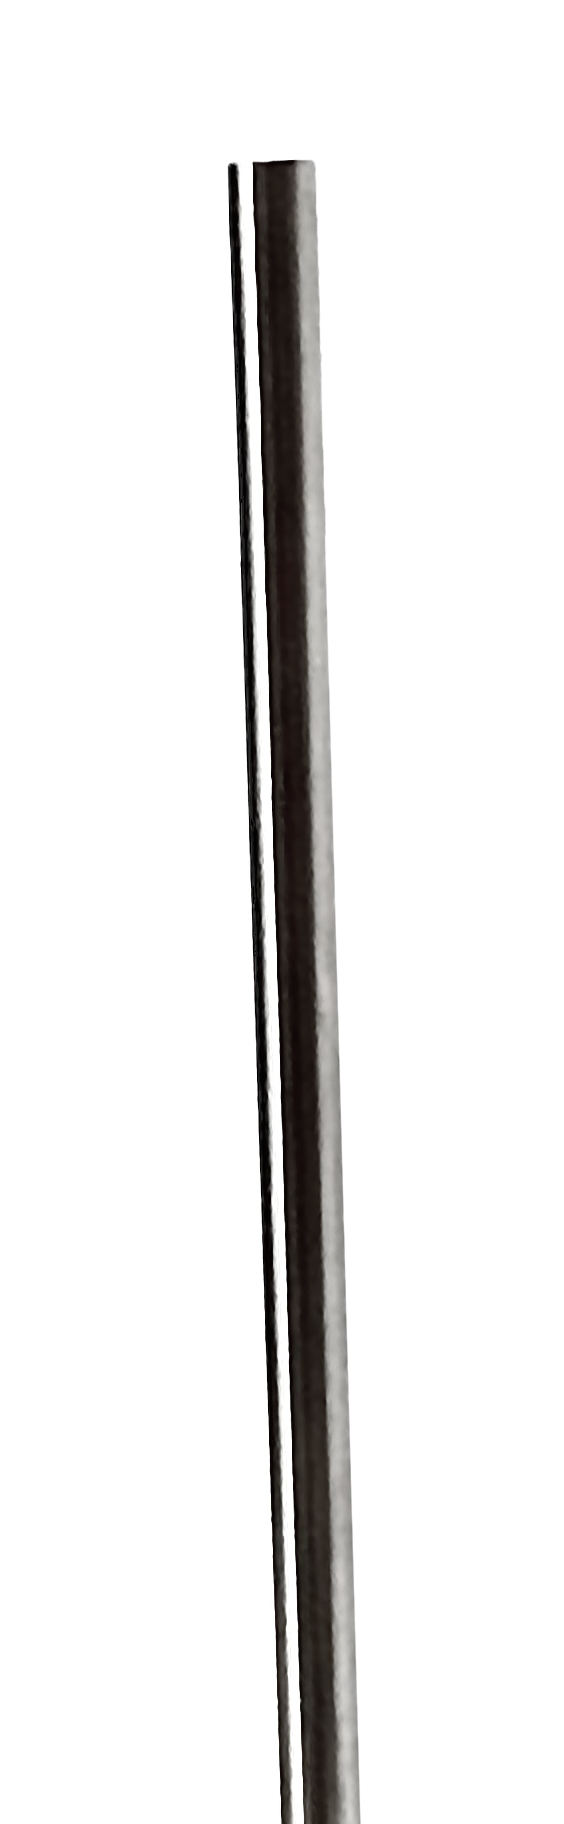 Stainless Steel BriteRail Hanger Rod